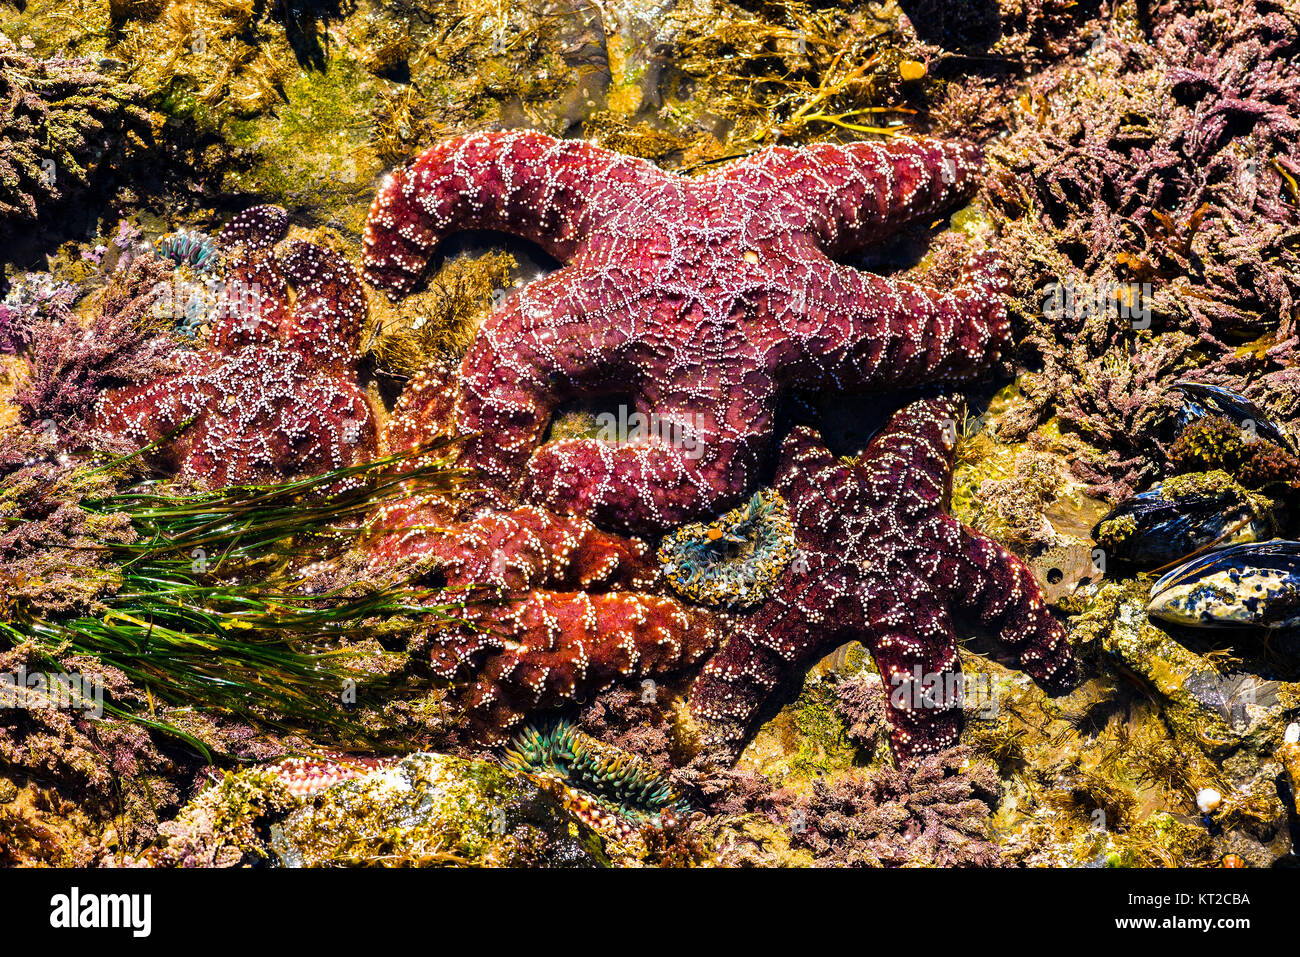 Ochre starfish (Pisaster ochraceus) Crystal Cove State Park, Laguna Beach, California Stock Photo